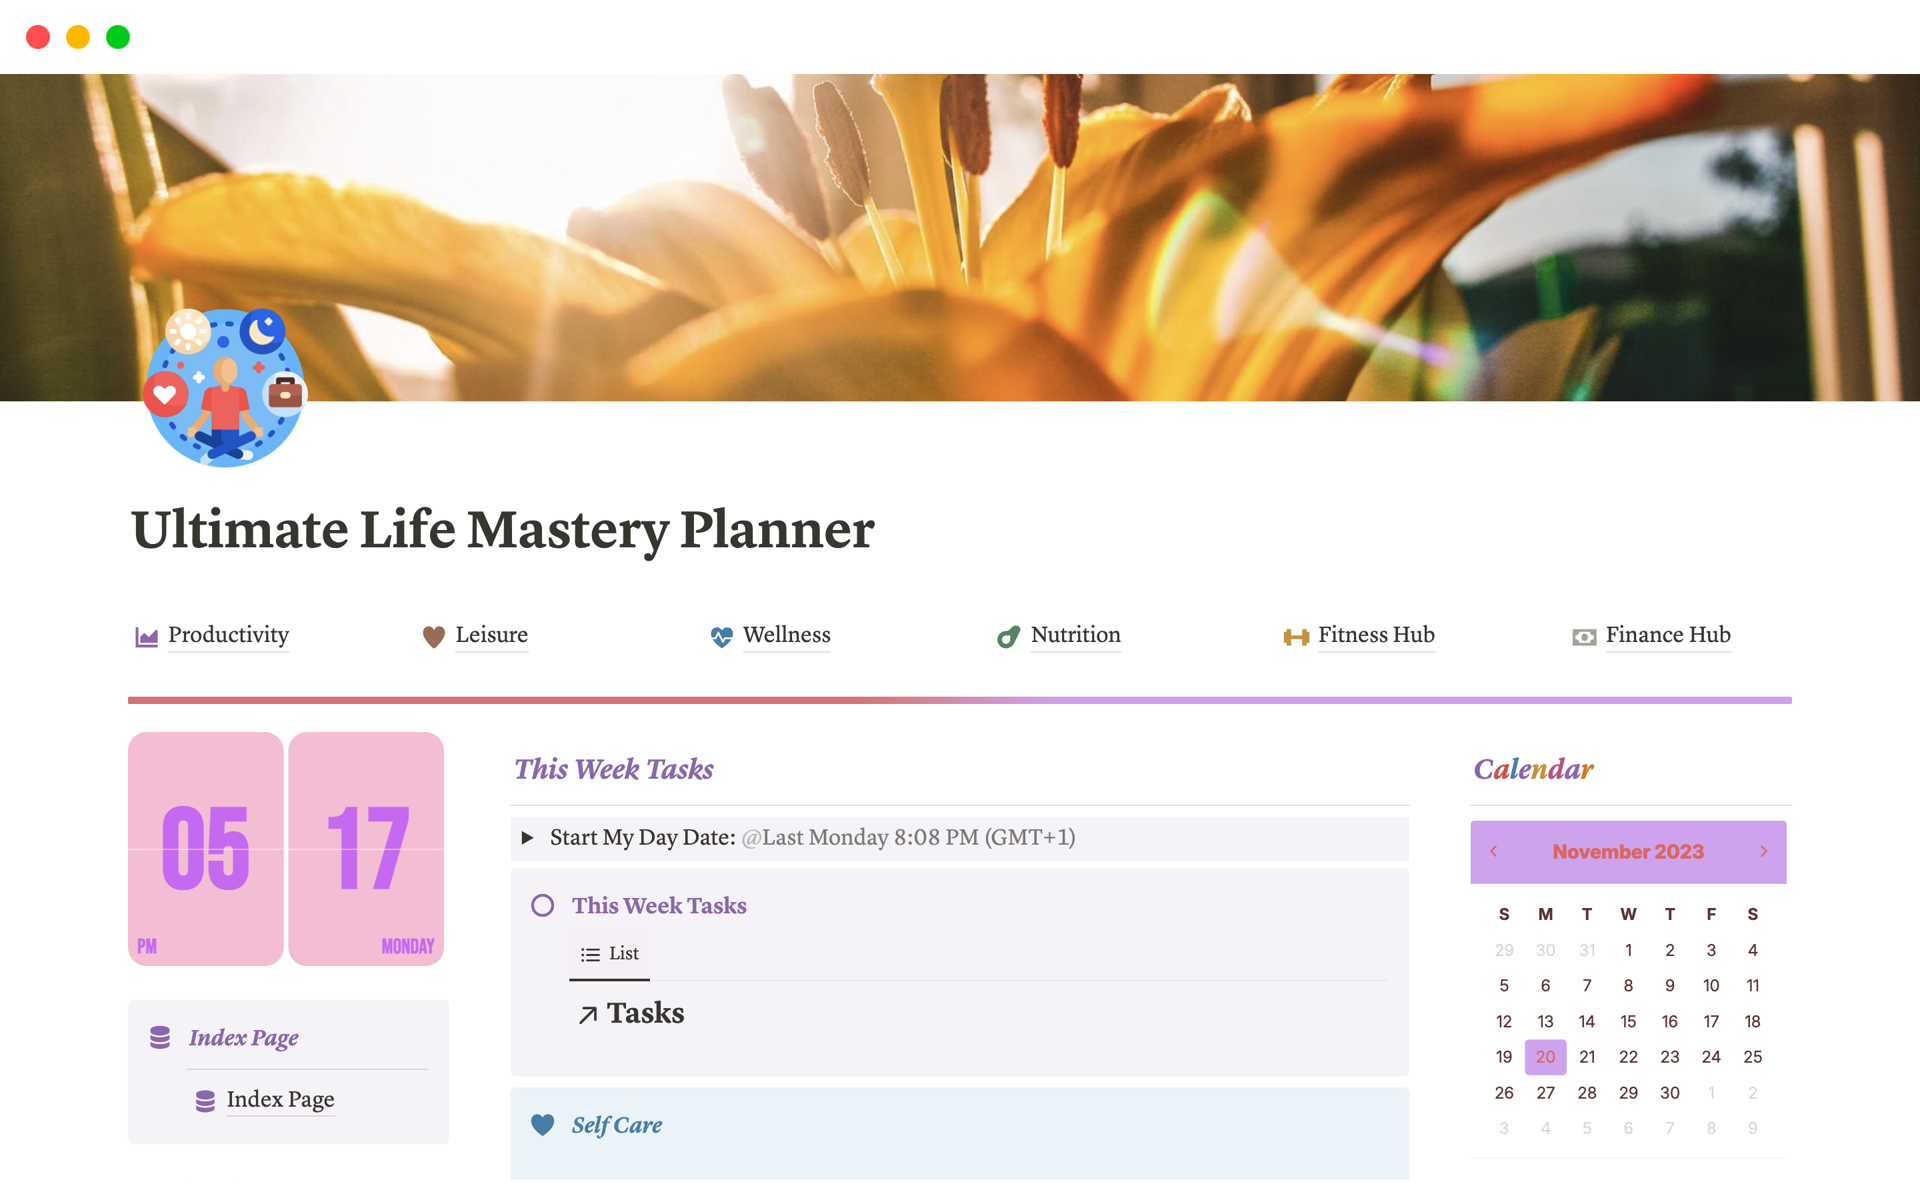 Uma prévia do modelo para Ultimate Life Mastery Planner